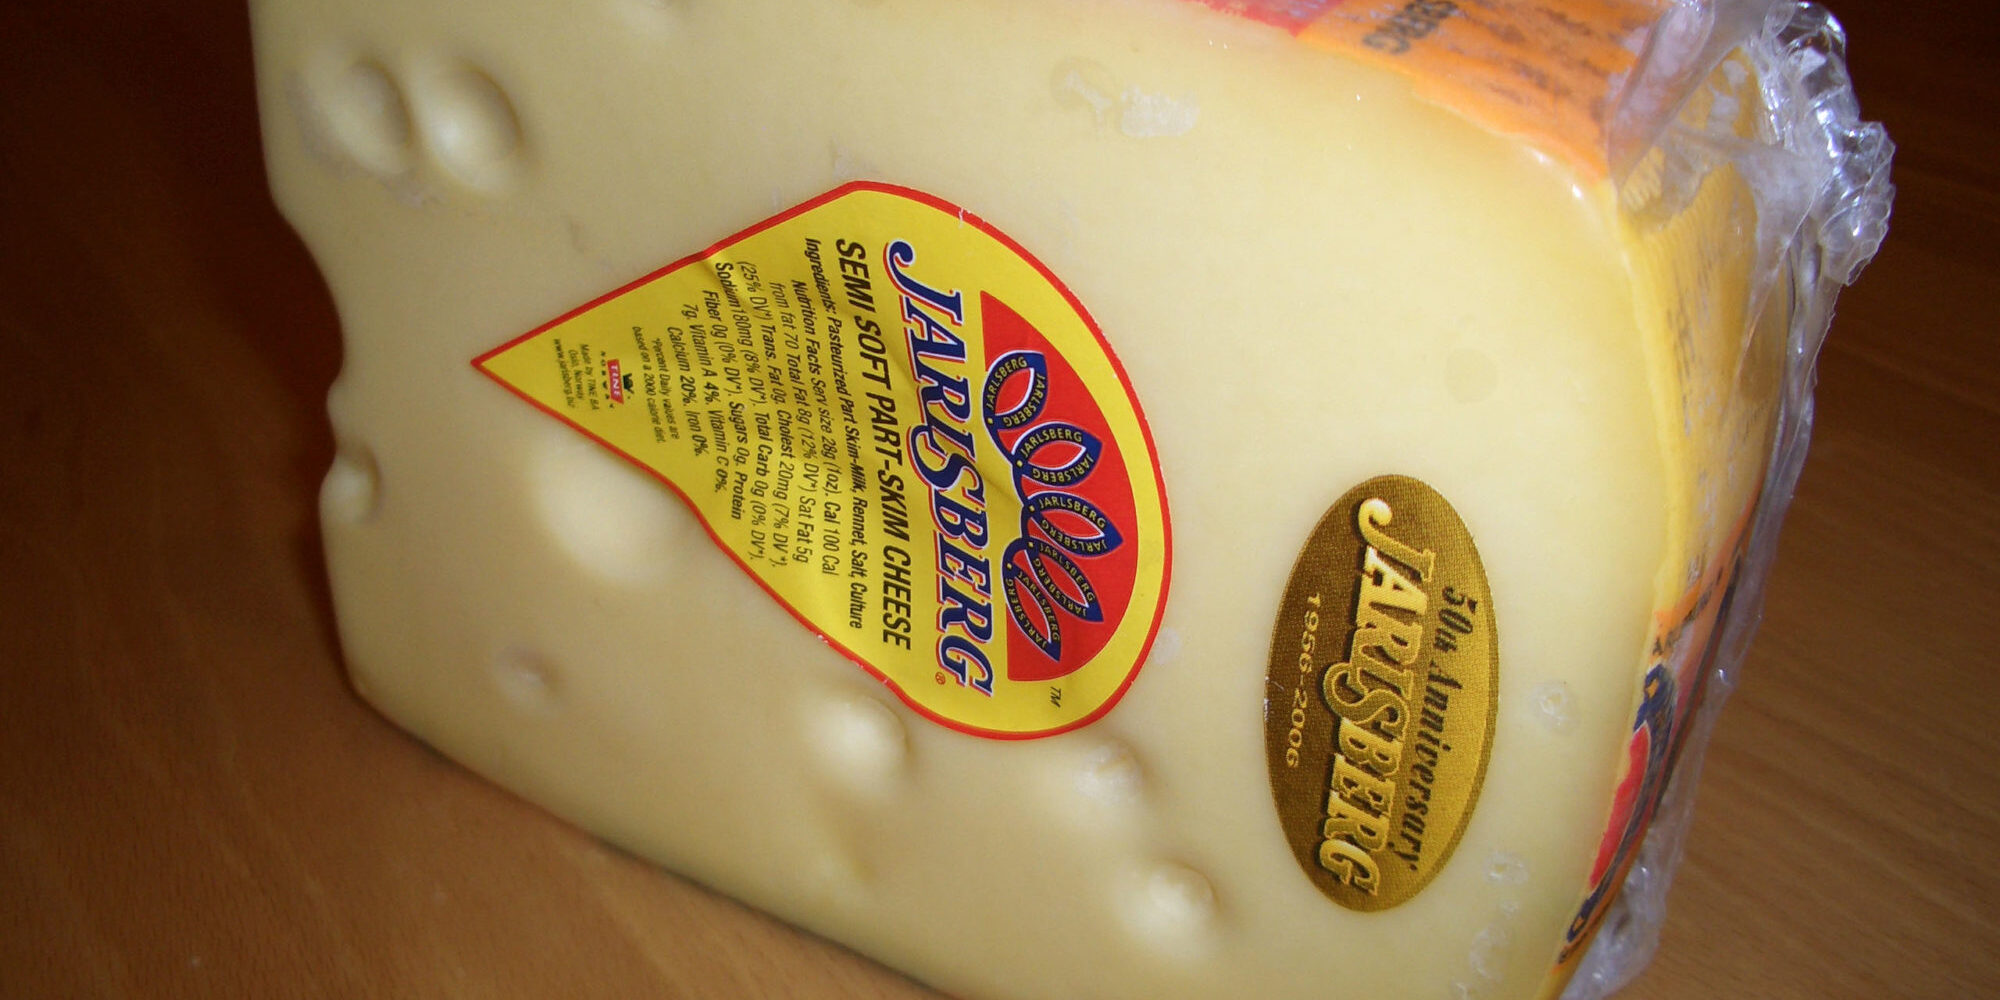 Jarlsberg ost